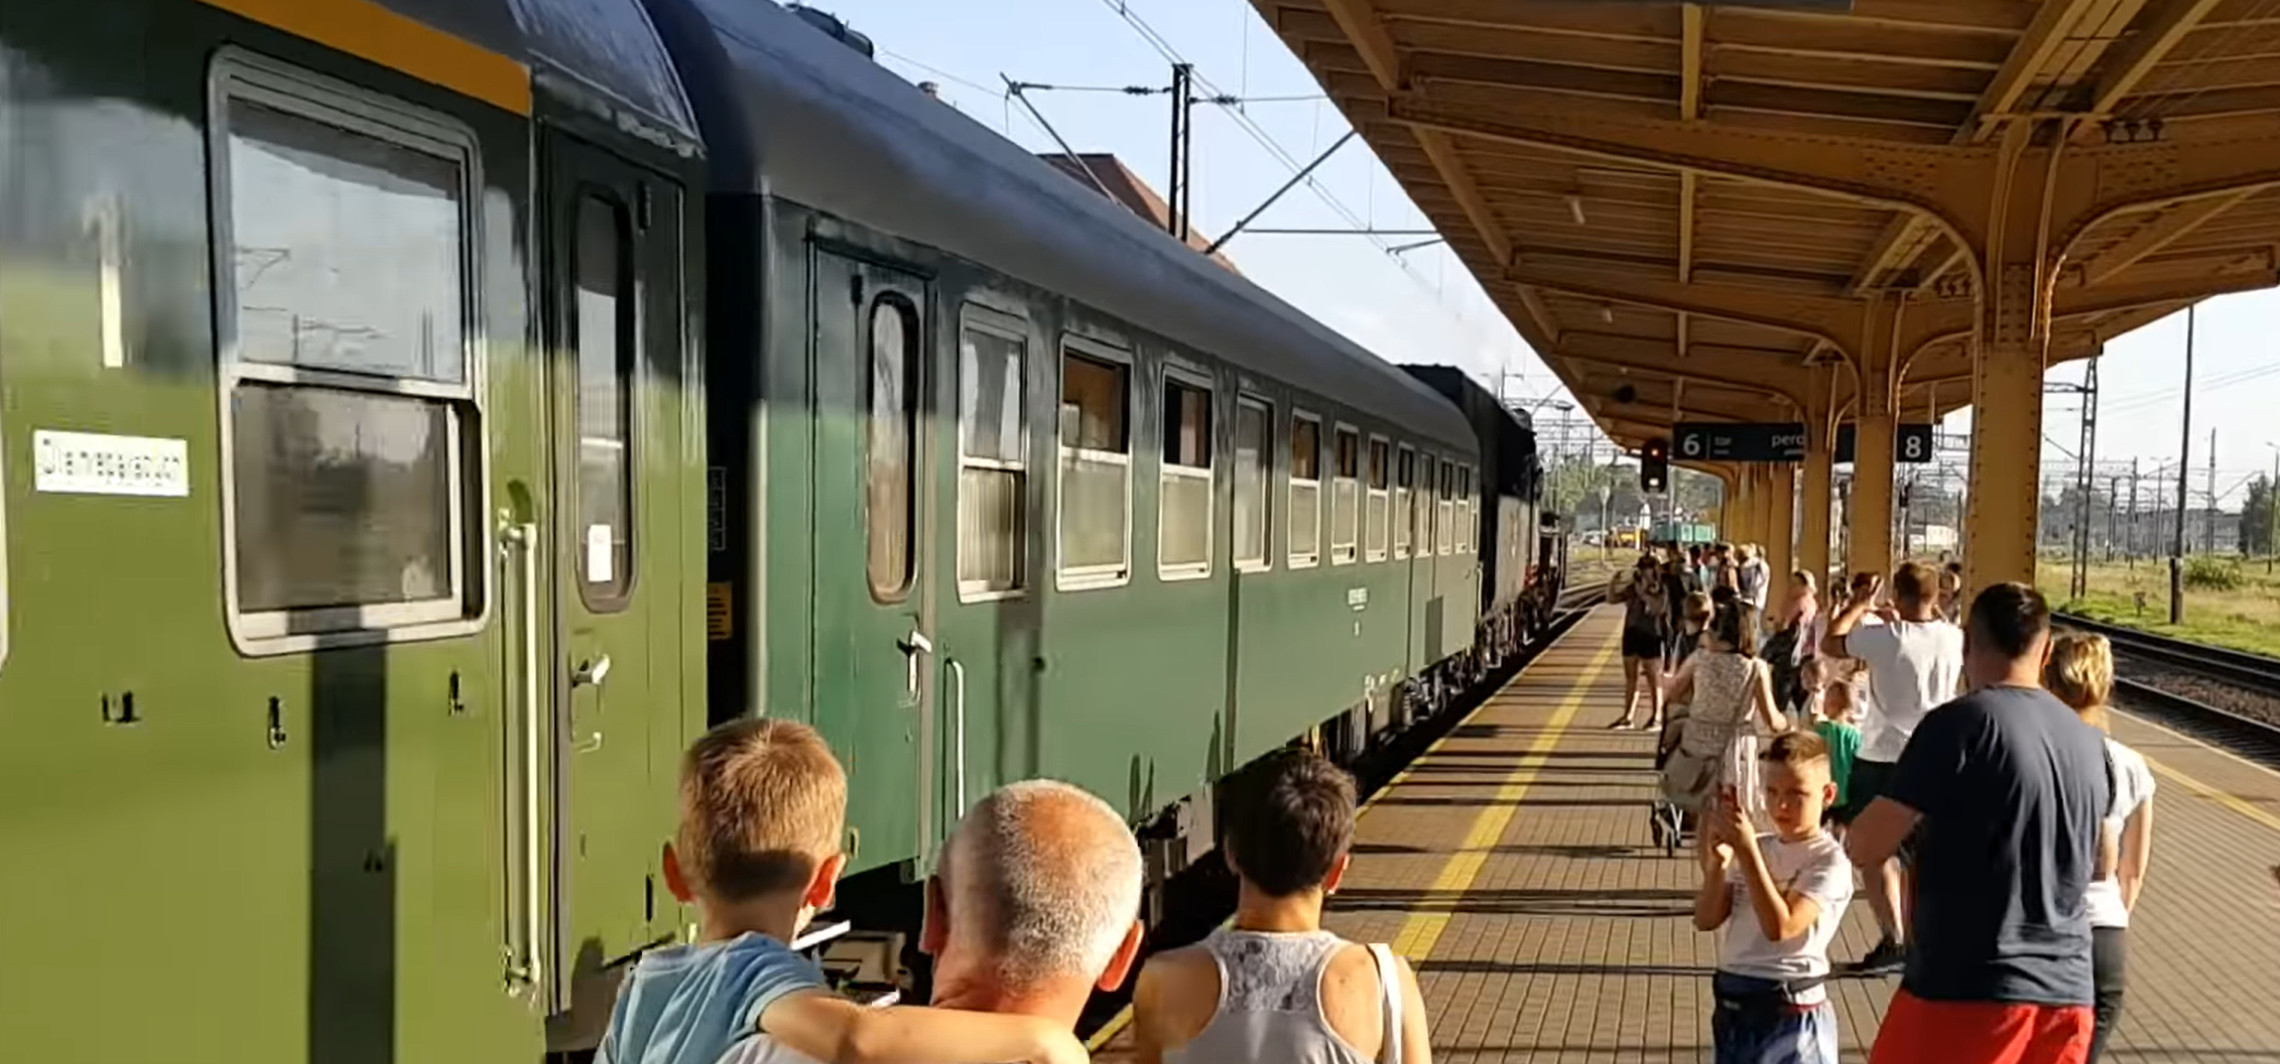 Inowrocław - Do Inowrocławia przyjedzie niecodzienny pociąg